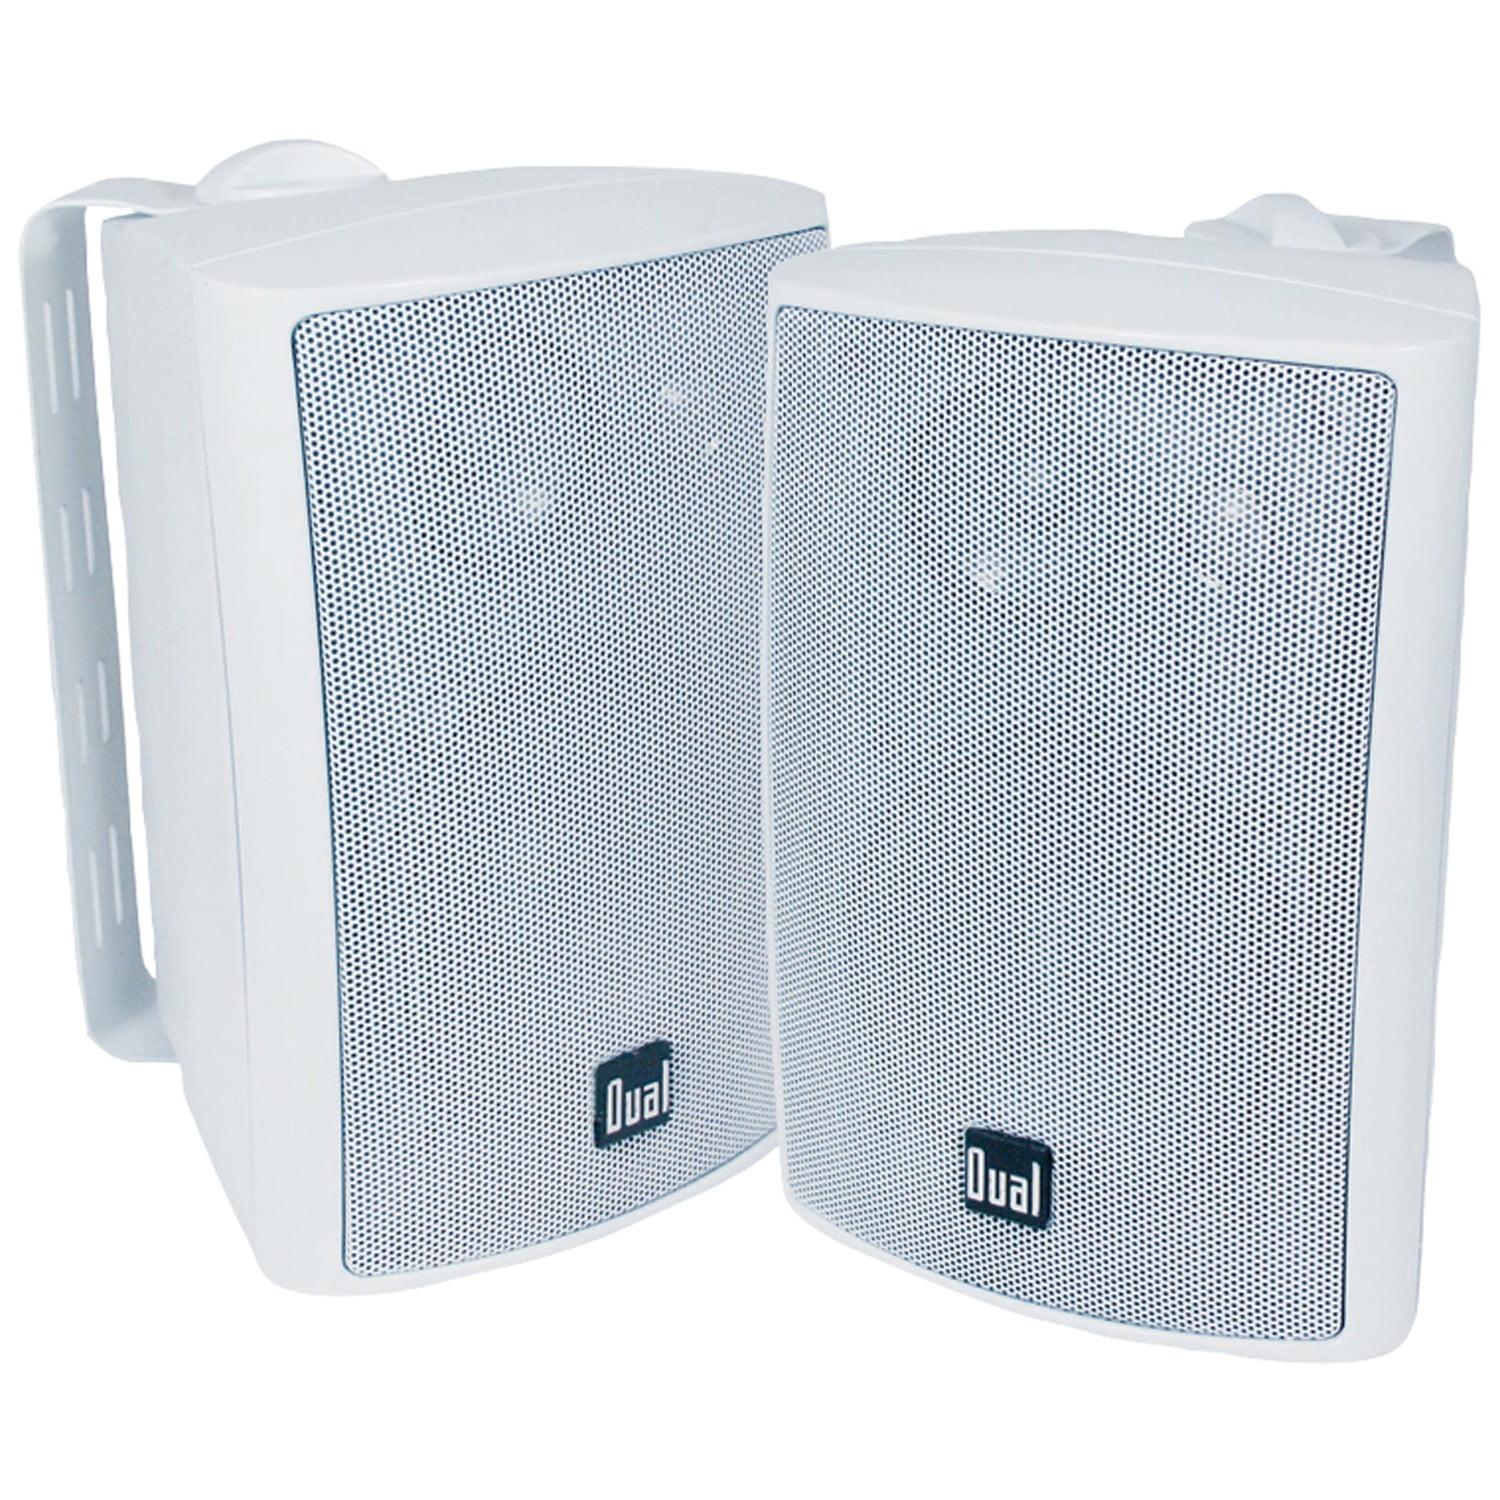 Dual Audio Dual LU47PB 4 3-Way Indoor/Outdoor Speakers Black 